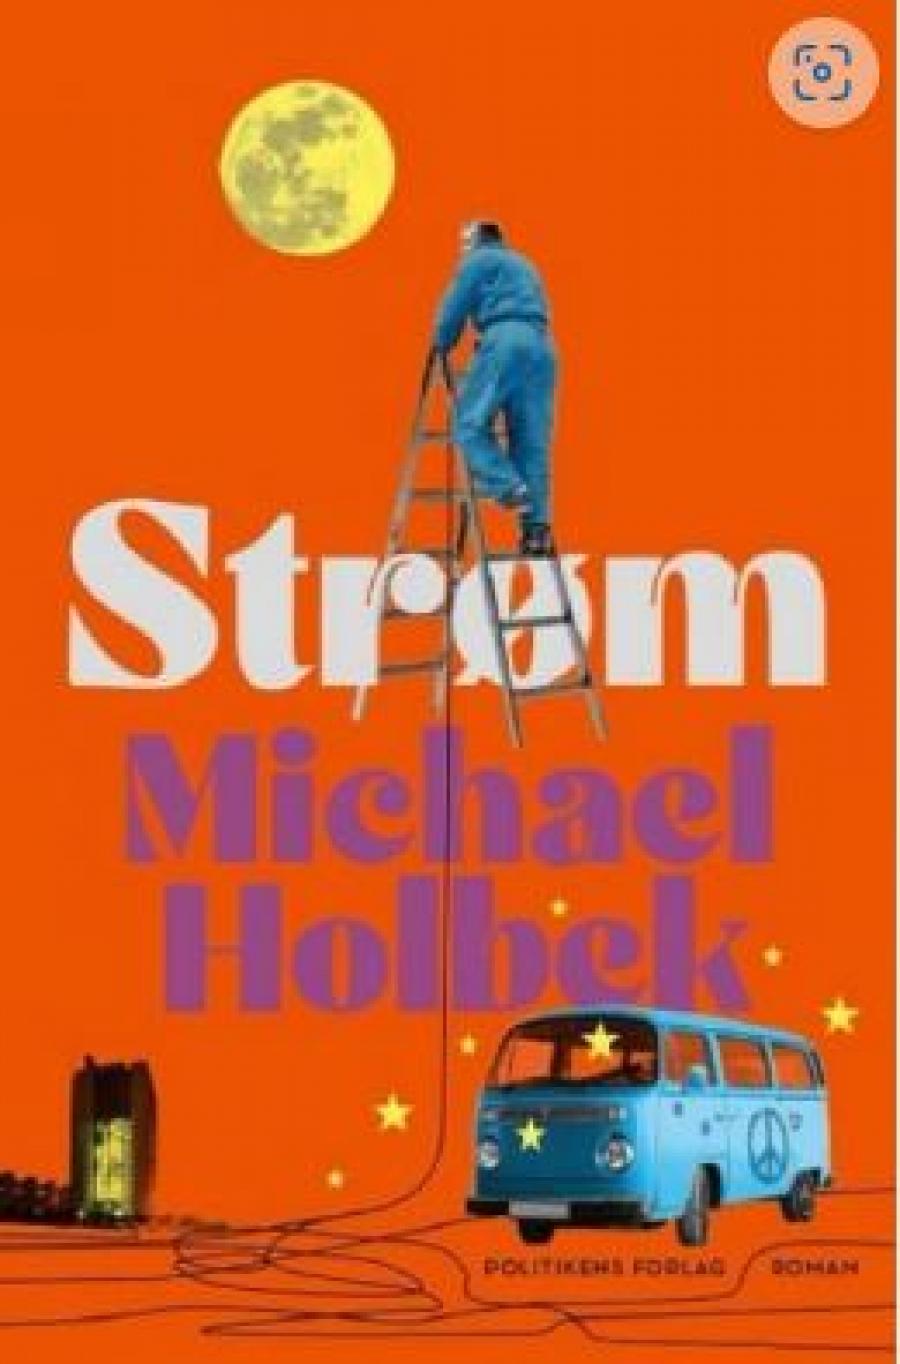 Michael Holbek, "Strøm"